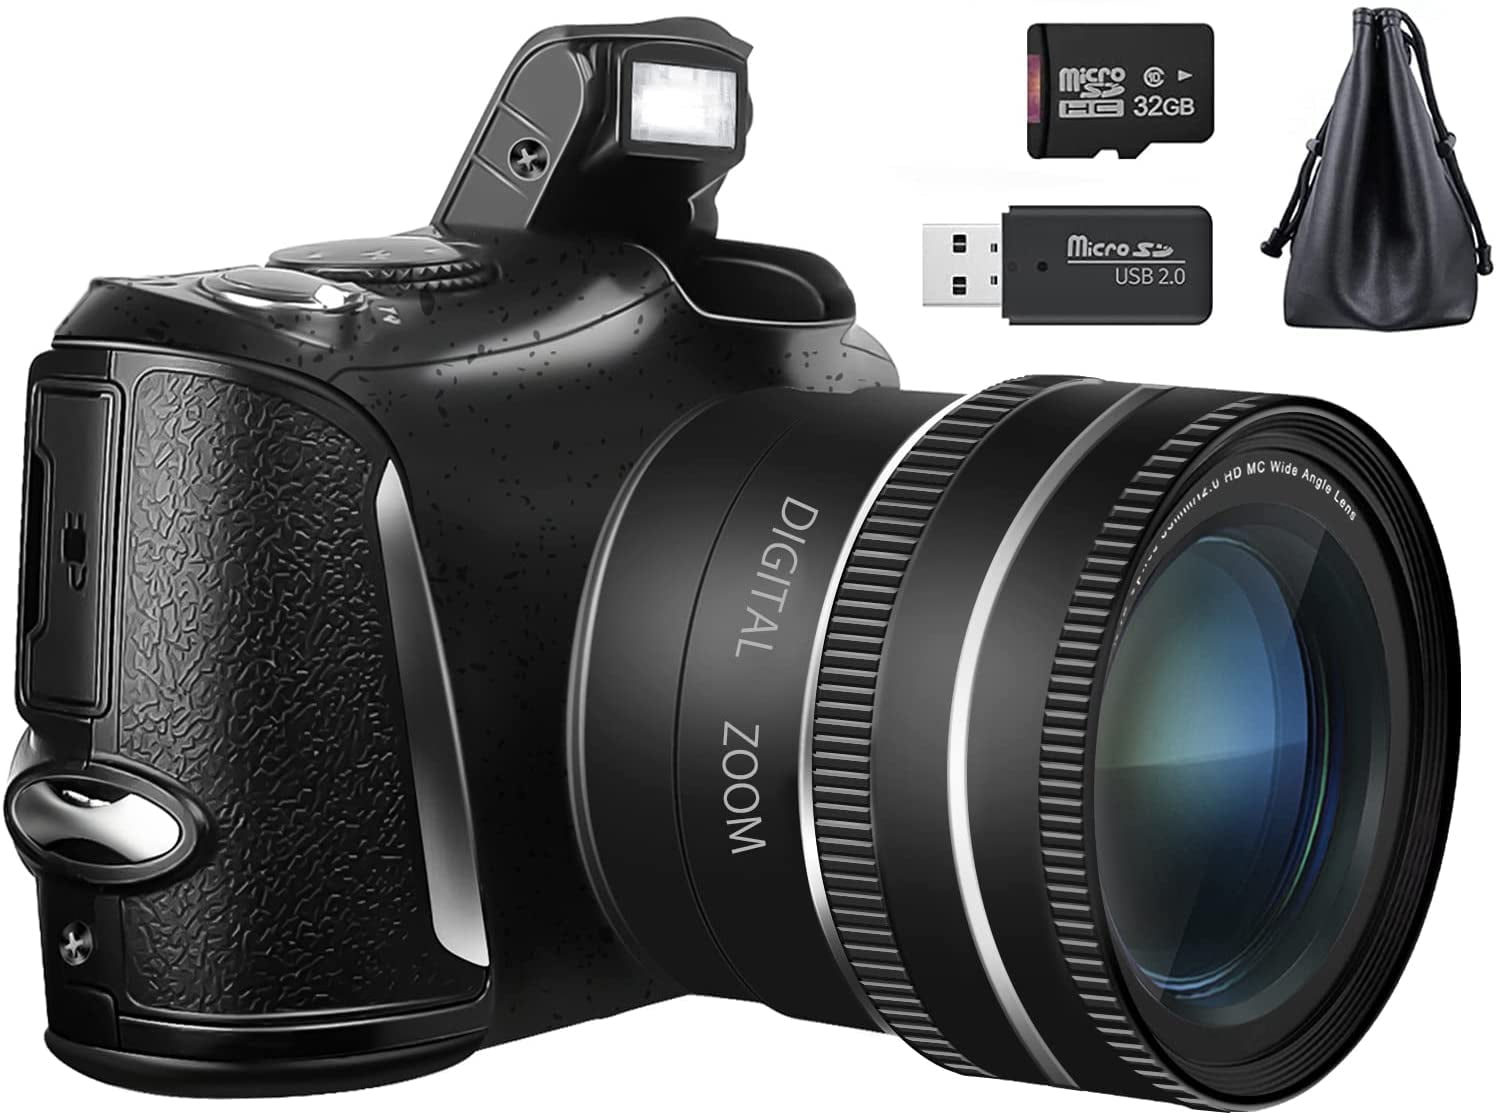 4K Digital Camera 48MP 16X Vlogging Camera  Camcorder w/ Wide Angle  Lens